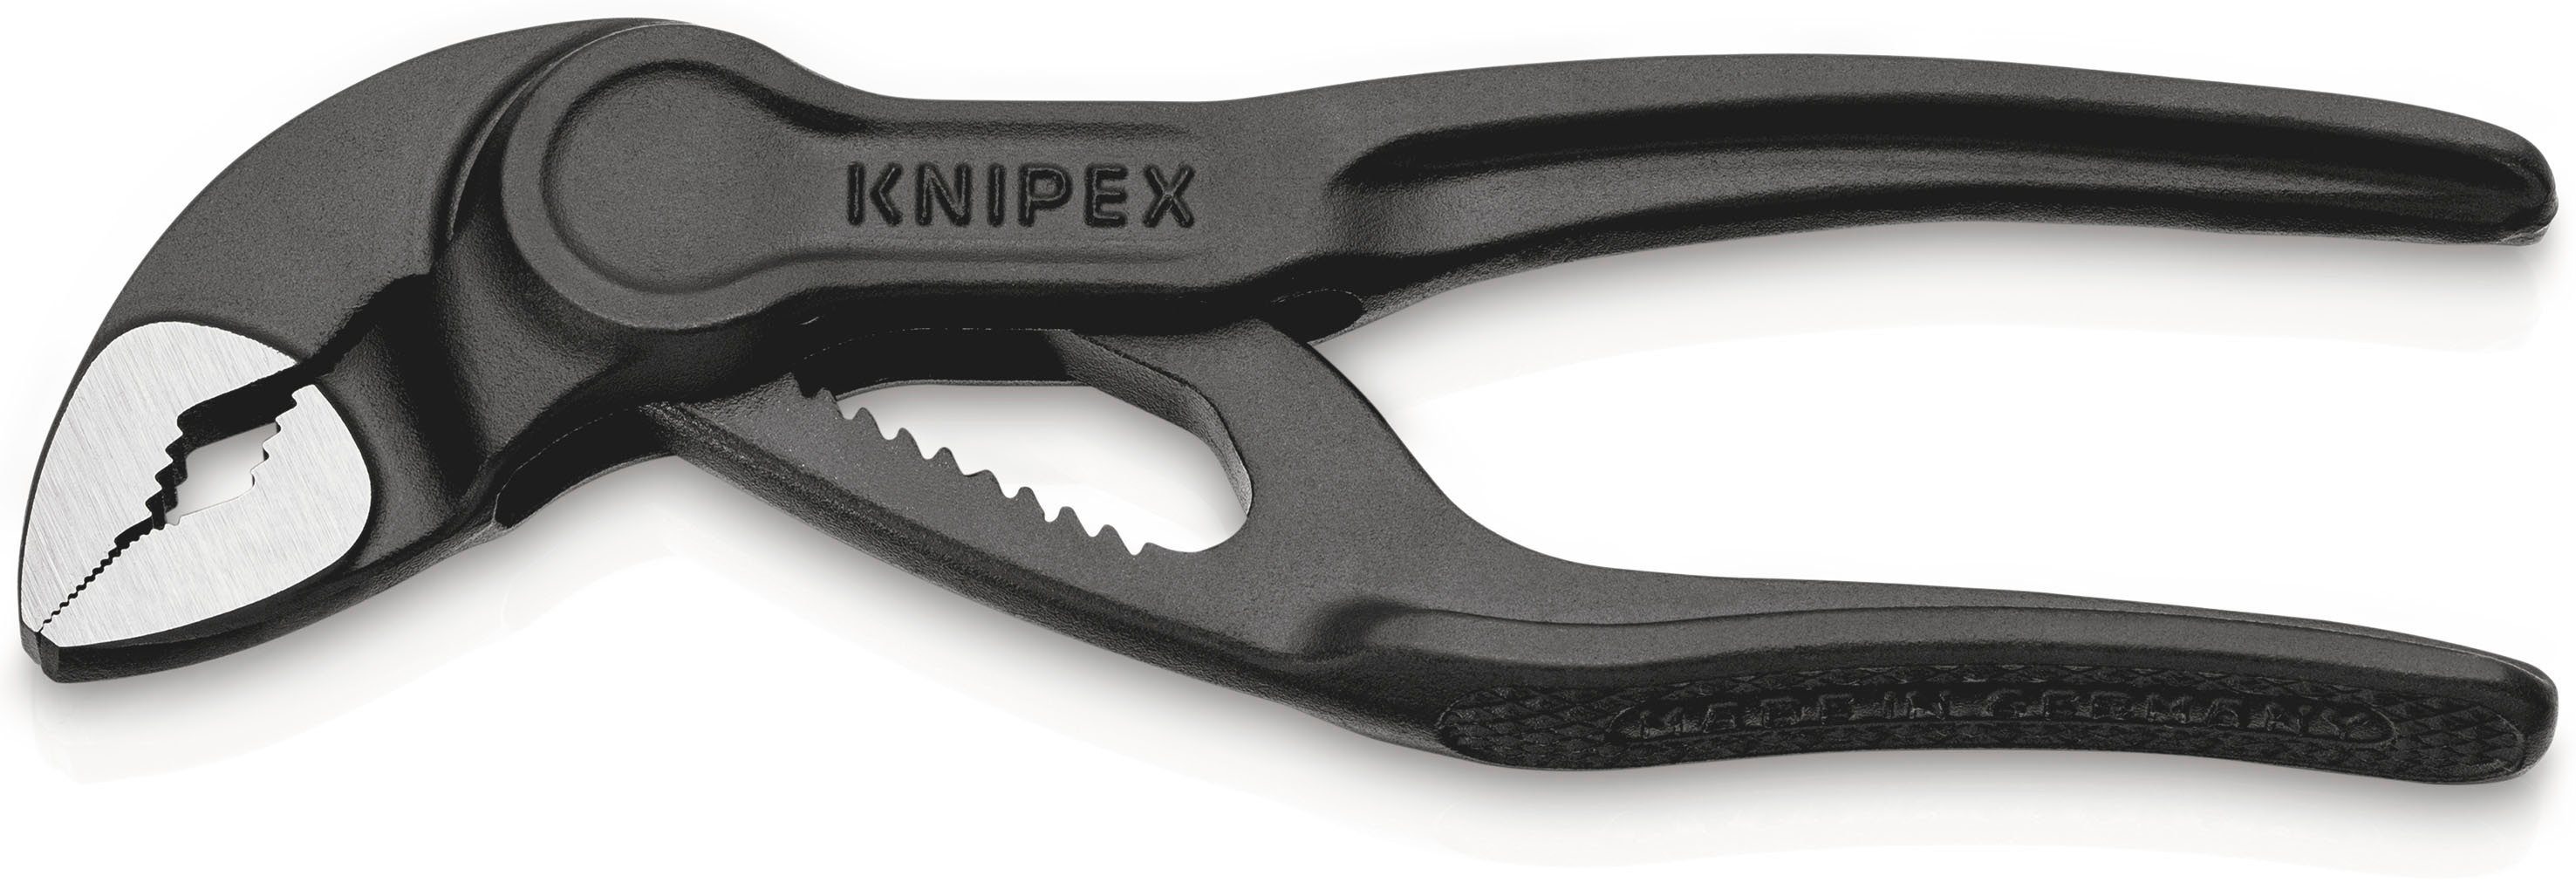 Knipex Wasserpumpenzange 87 00 100 BK Cobra® XS Rohr- und Wasserpumpenzange (SB-Karte/Blister), 1-tlg., grau atramentiert, aufgeprägte, raue Oberfläche 100 mm